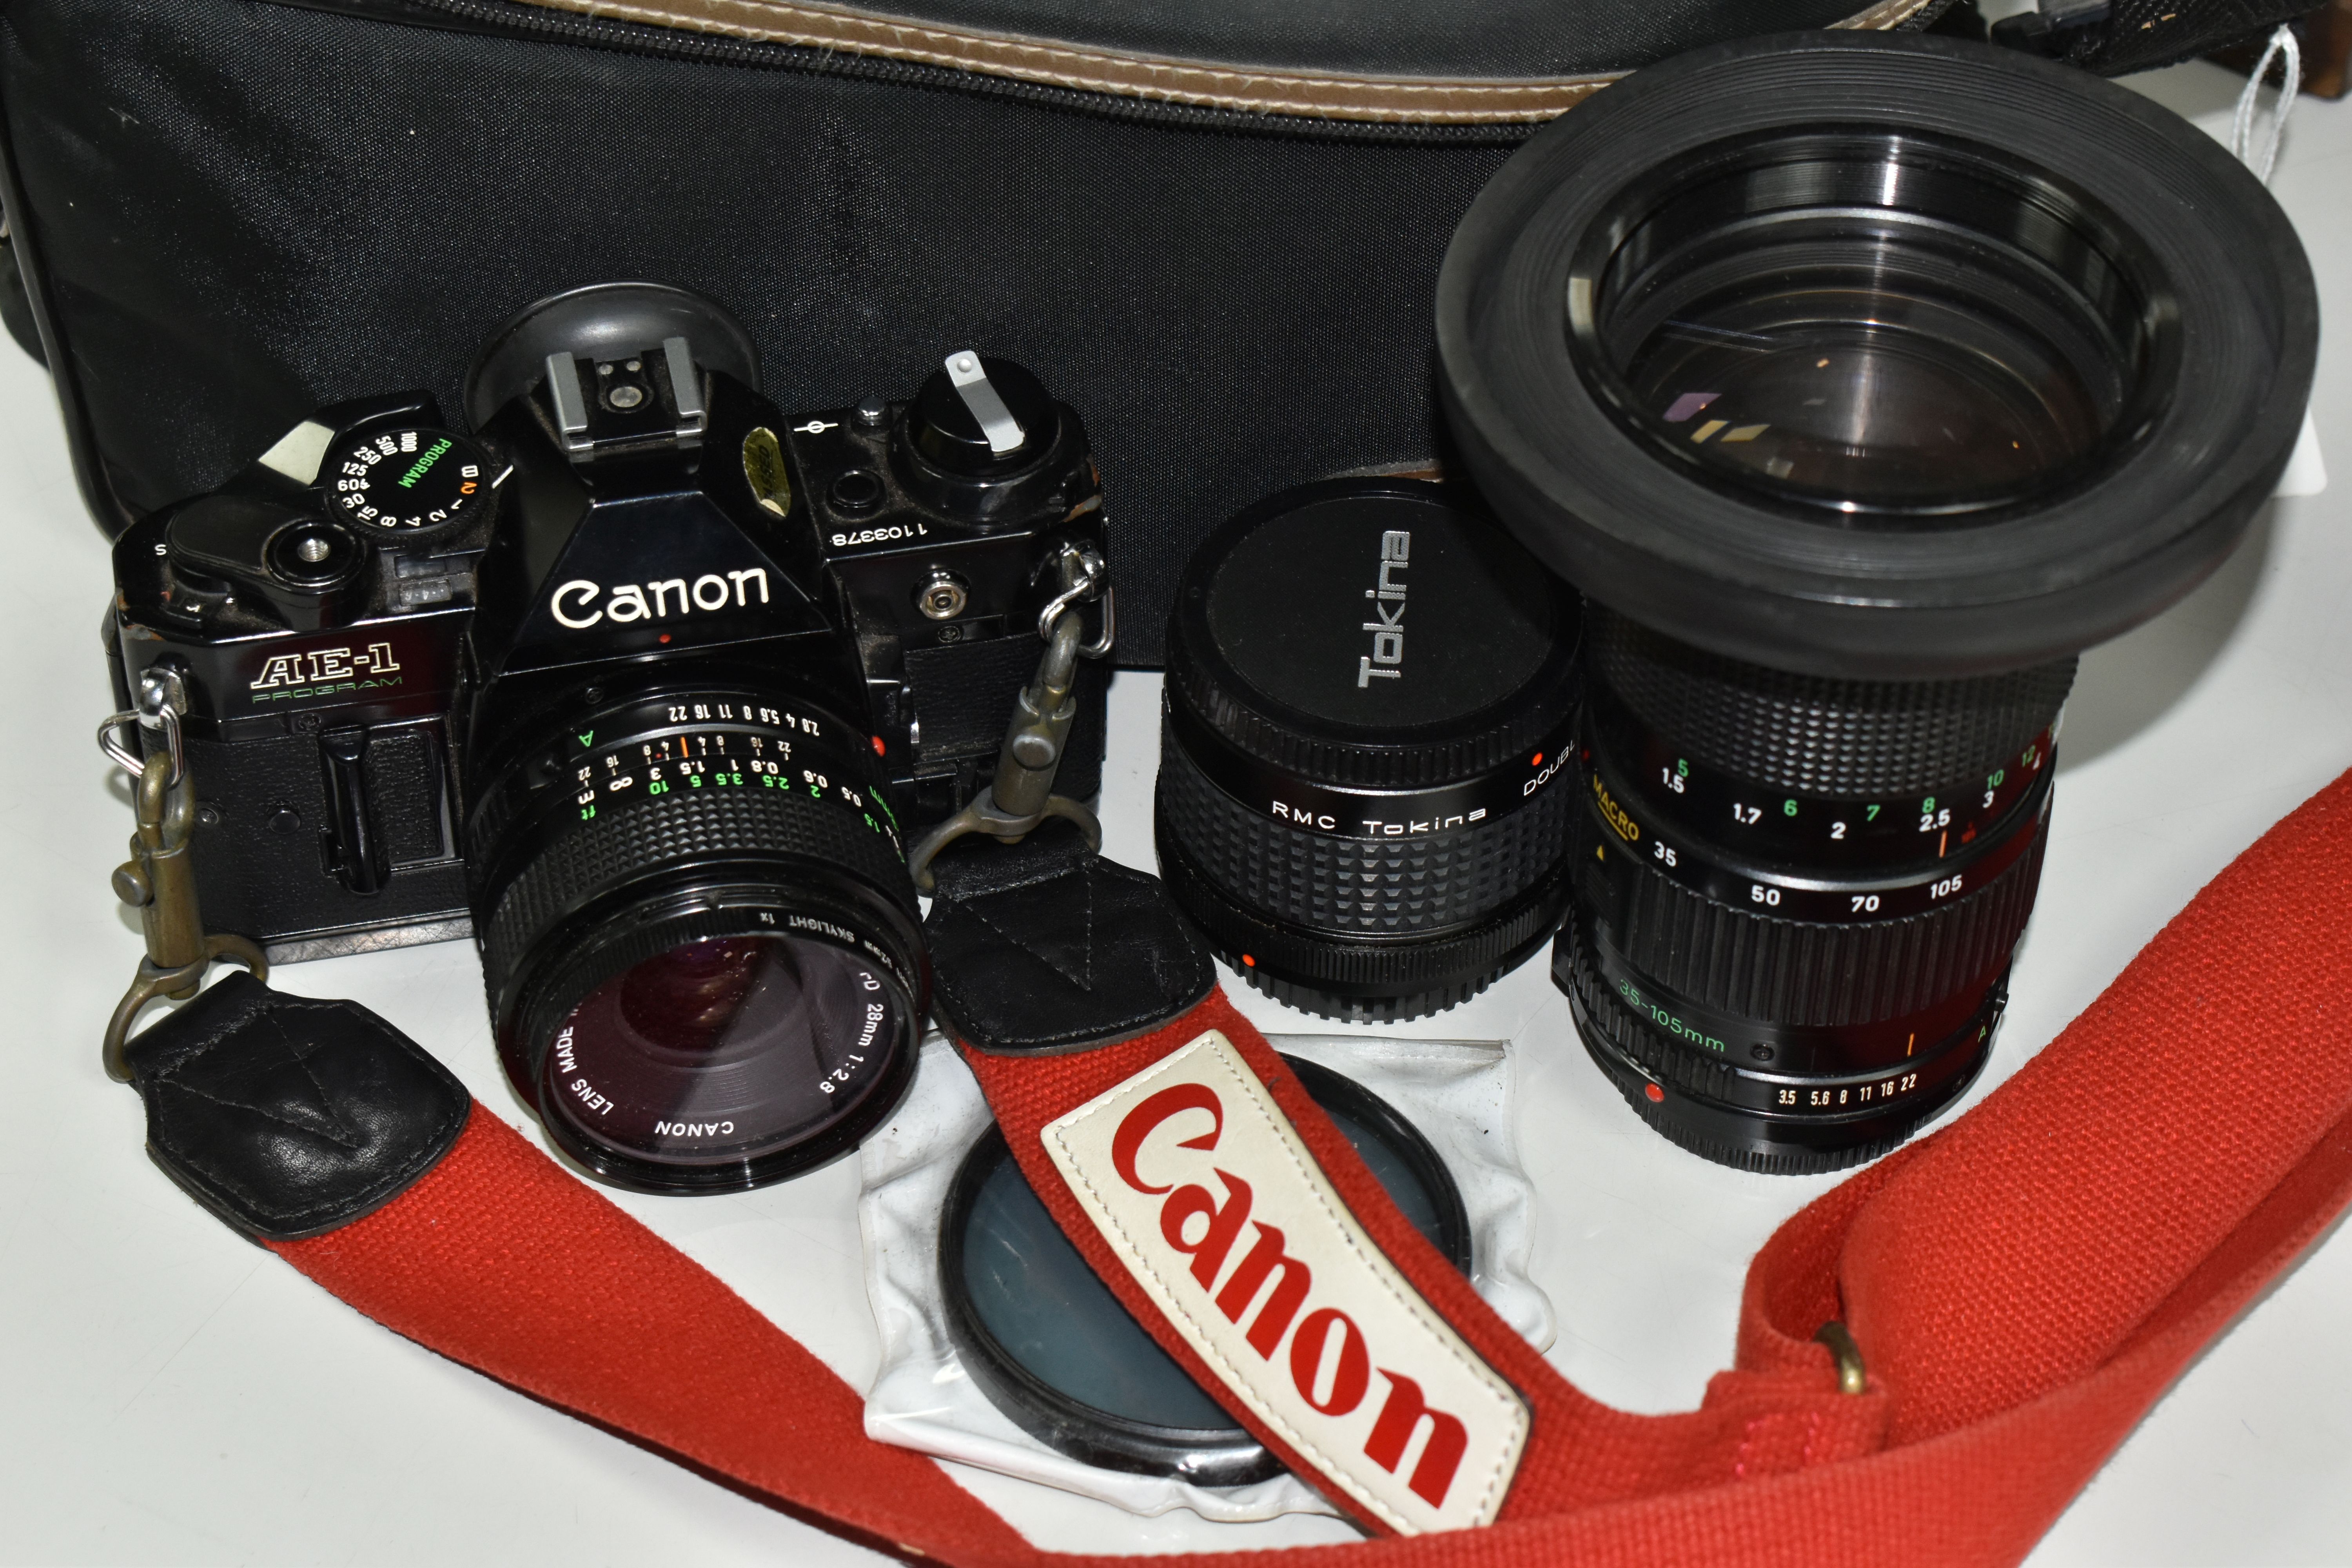 CANON PHOTOGRAPHIC EQUIPMENT ETC, comprising a Canon AE-1 Program 35mm SLR camera body, Canon 35-105